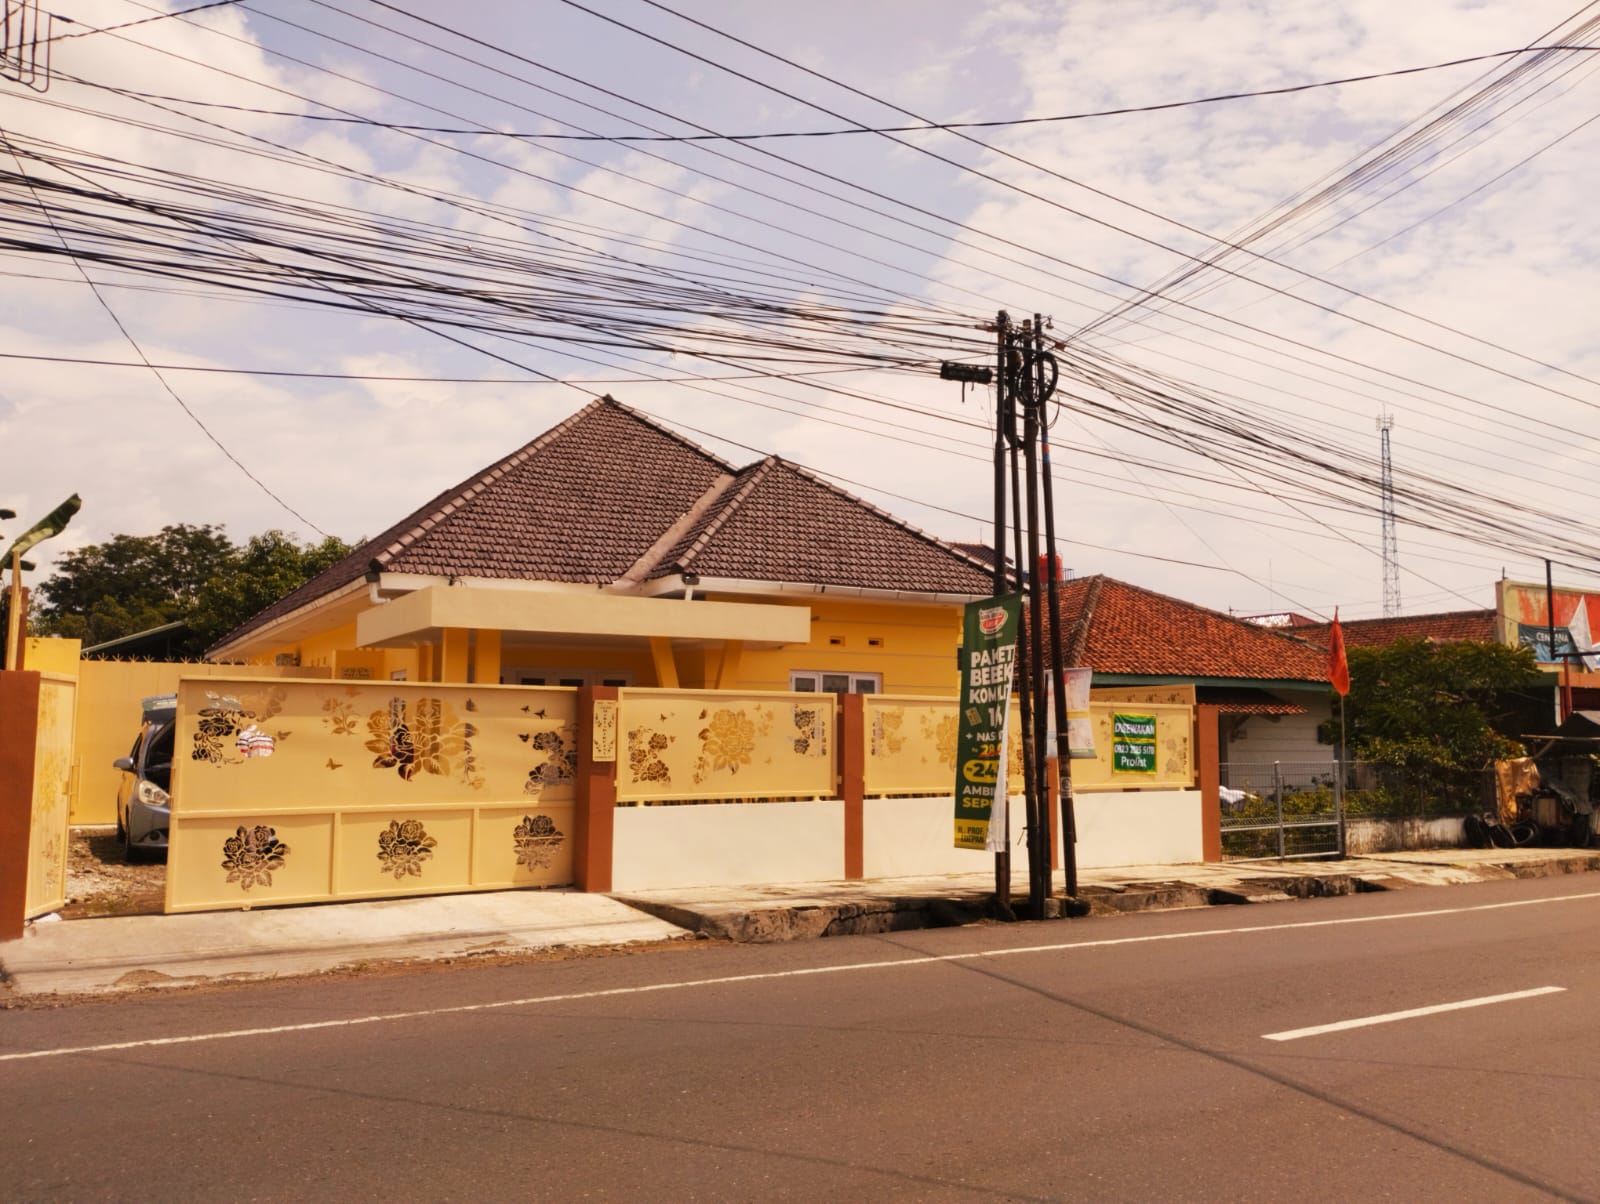 Disewakan Rumah Cantik Full Renovasi Dalam Kota Purwokerto - Martadireja 1